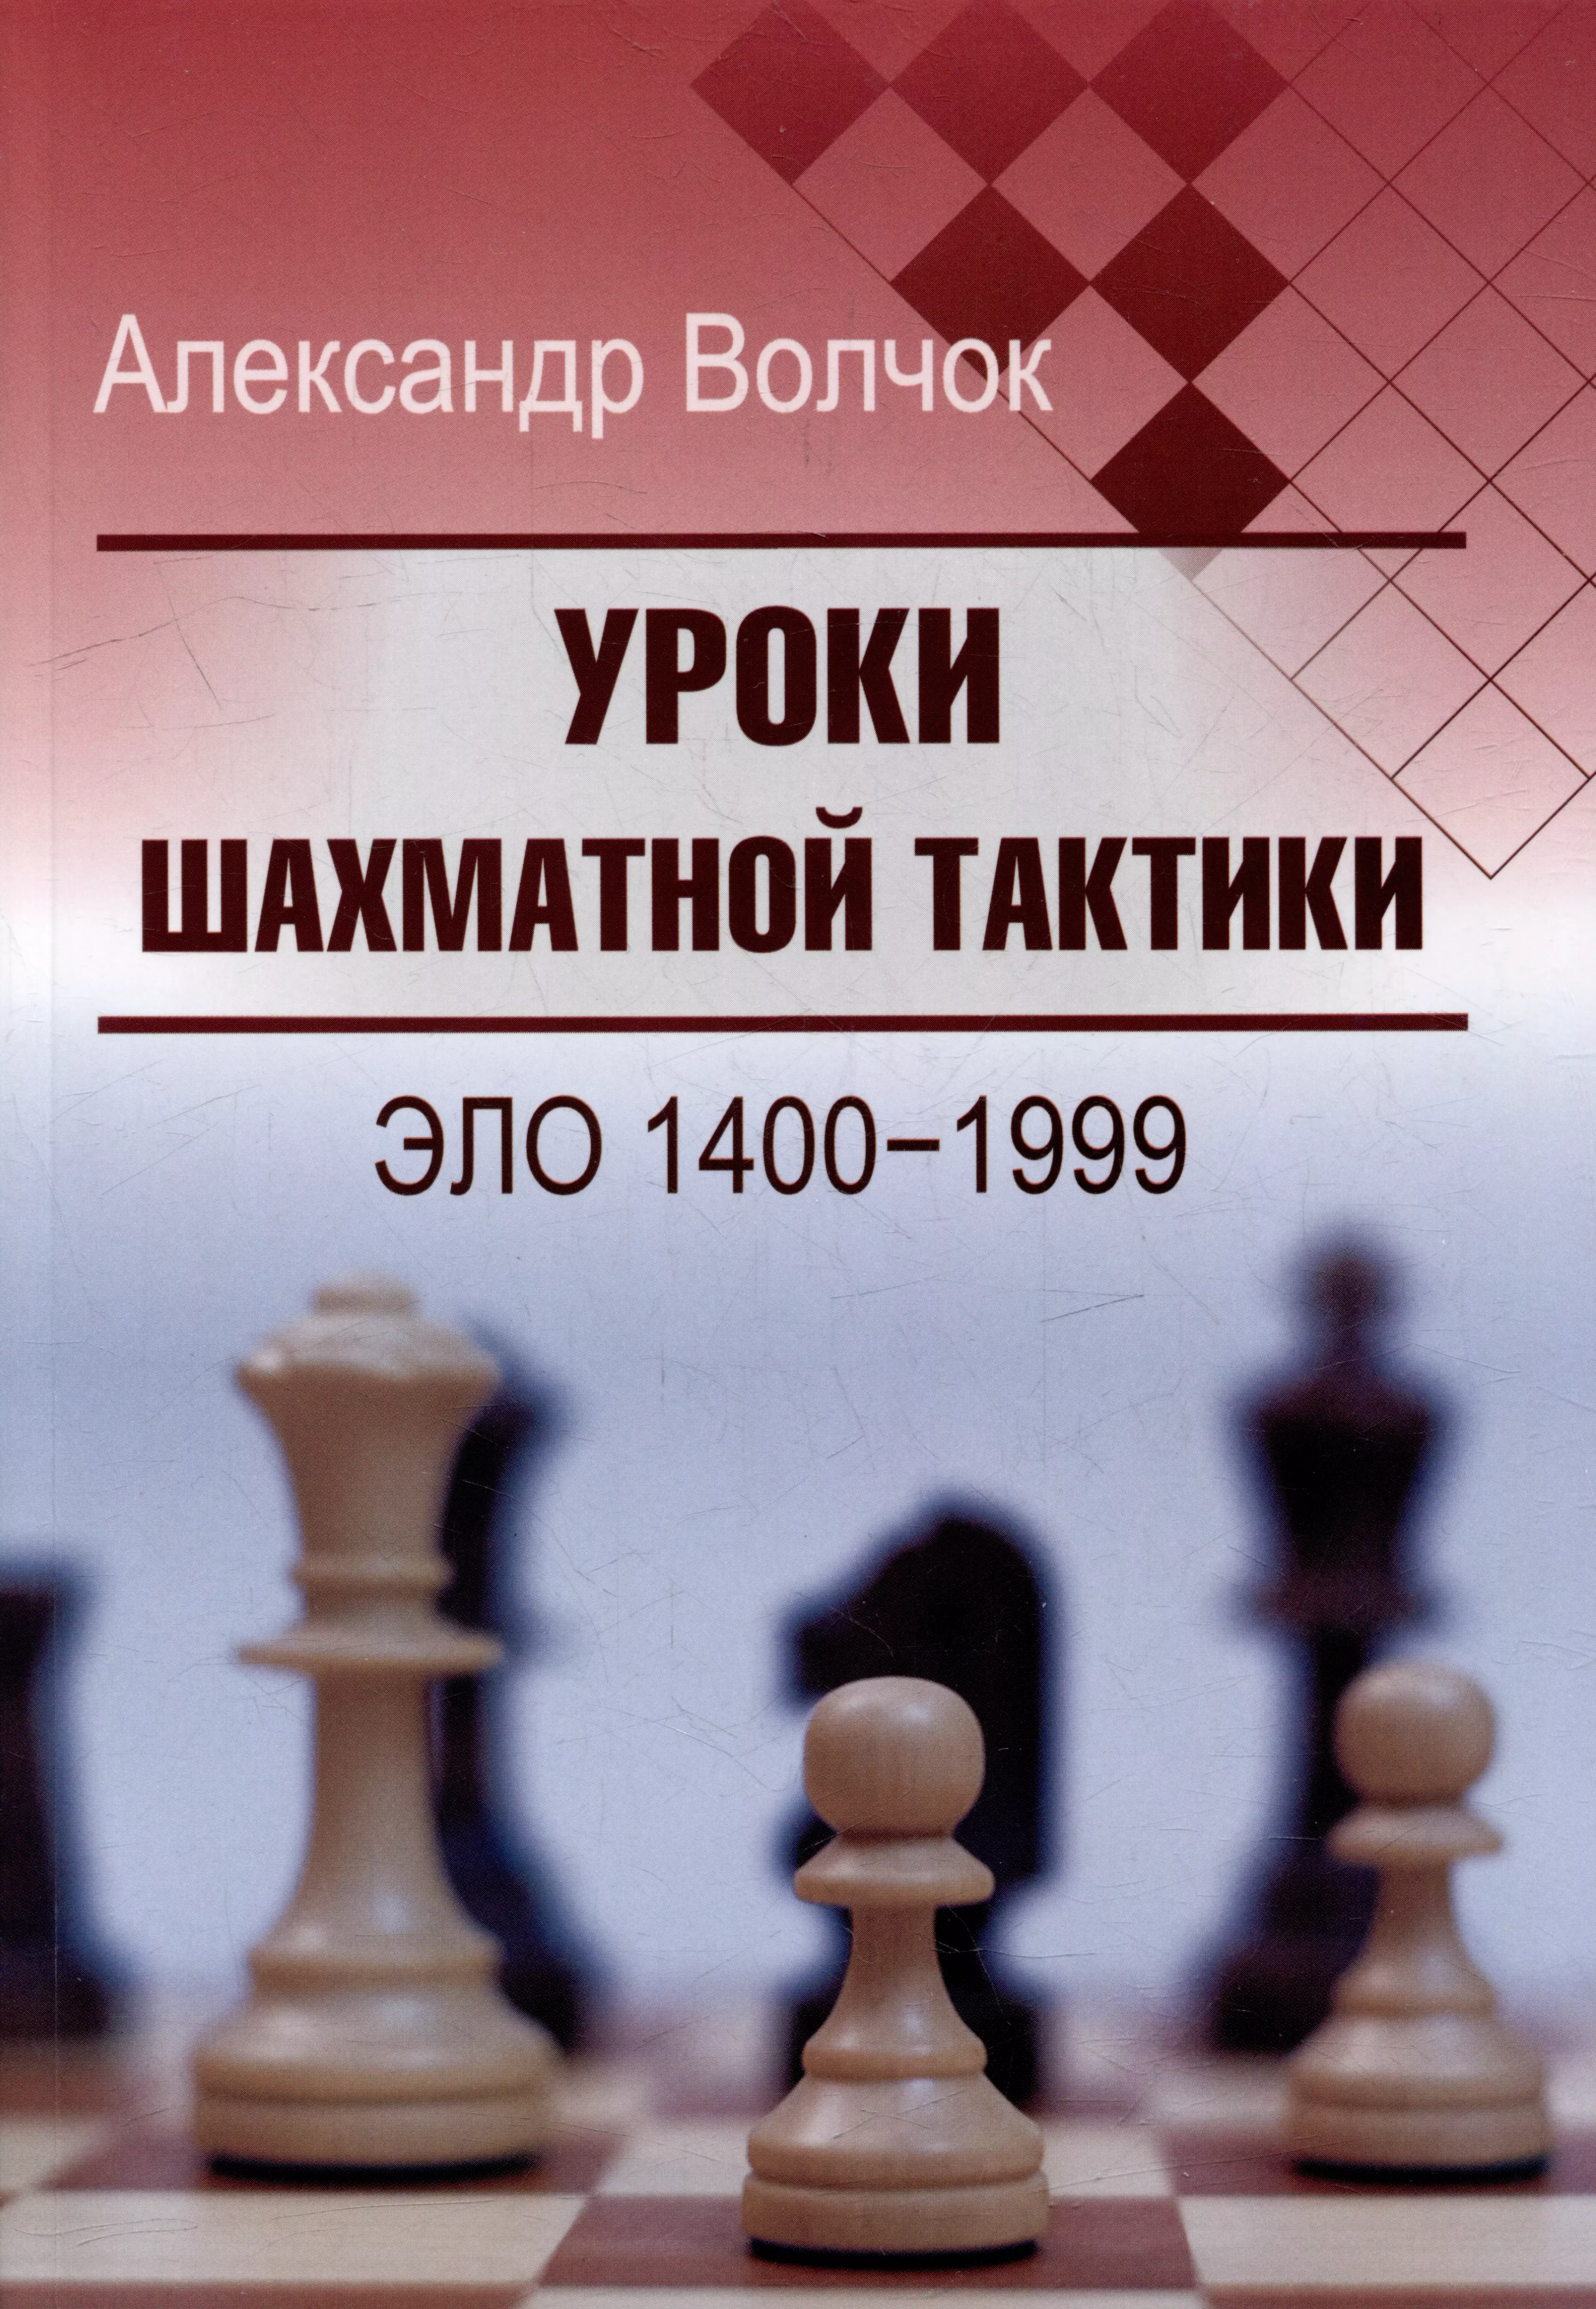 уроки шахматной тактики 1 начальный курс волчок а Уроки шахматной тактики. Эло 1400-1999